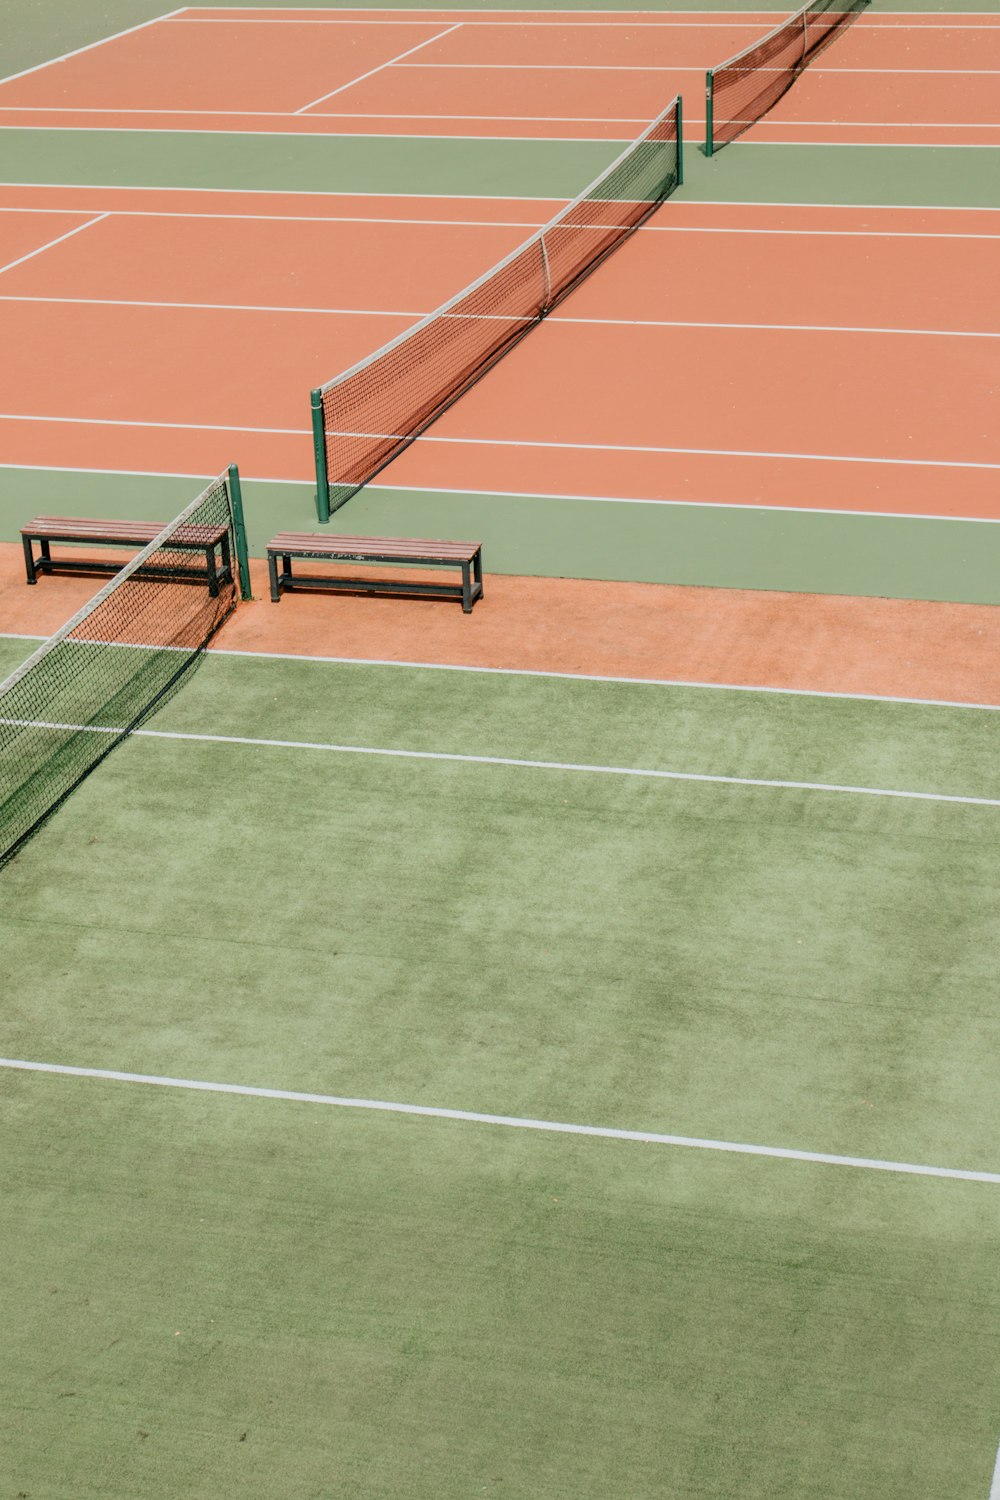 緑とオレンジの空のテニス場